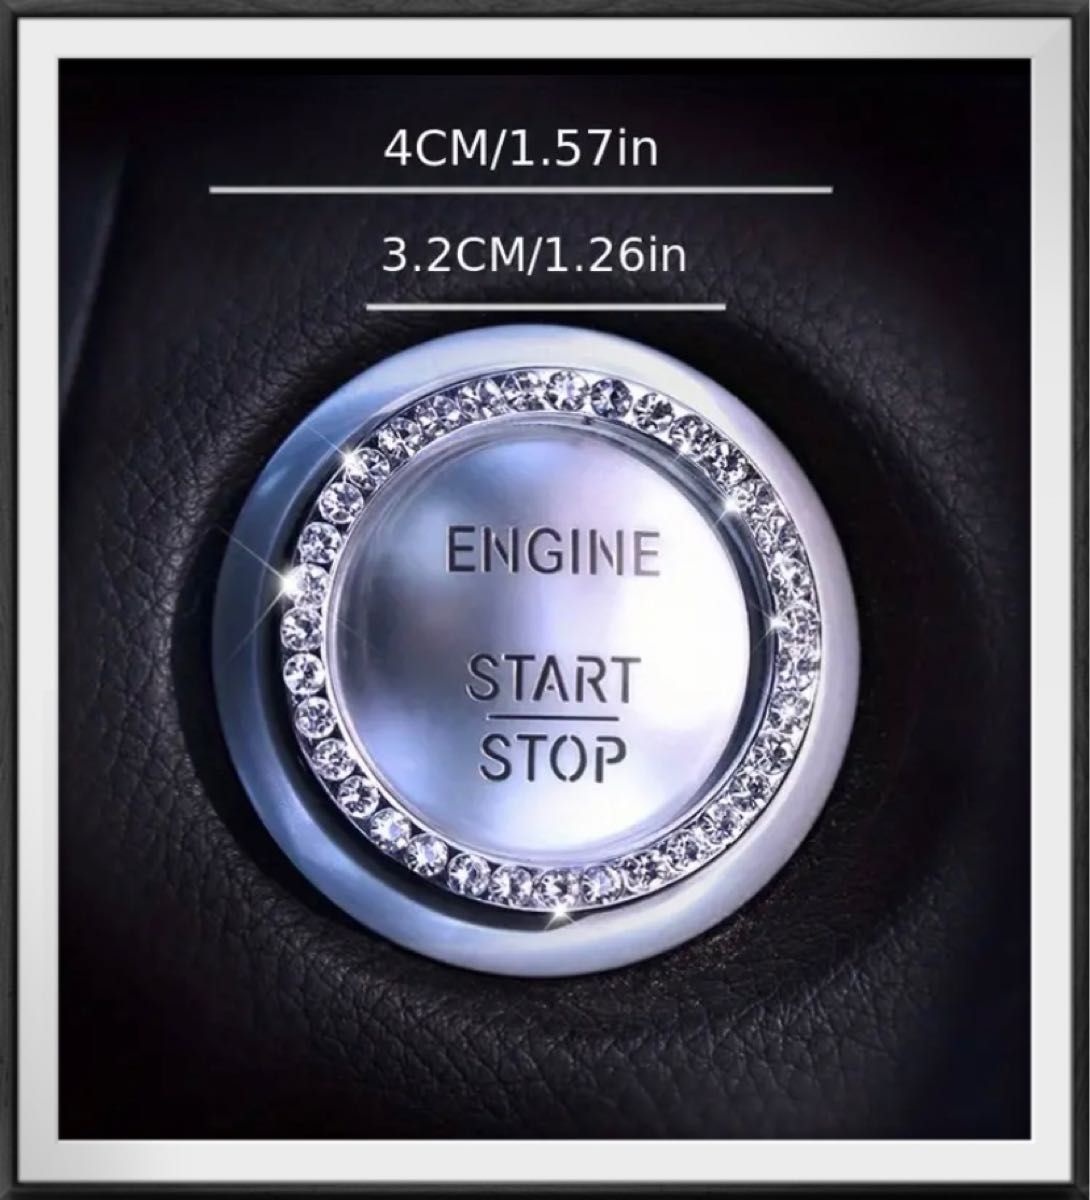 エンジンリング アクセサリー ピンクダイヤモンド 貼るだけ簡単 車 エンジンスタートボタンカバー エンジン スタートボタン